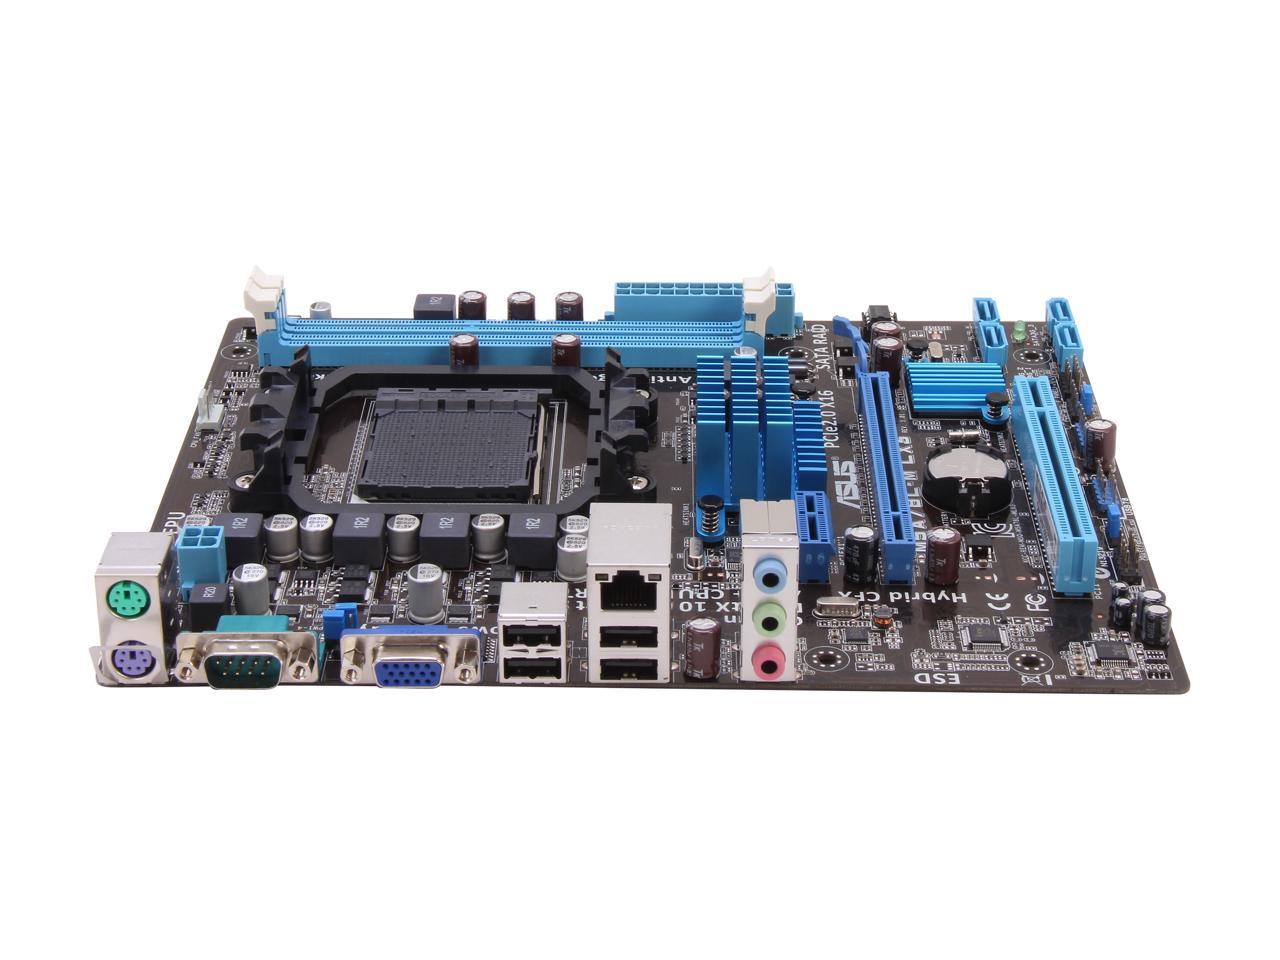 Asus M5A78L-M LX3 Desktop Motherboard - AMD 760G Chipset - Socket AM3+